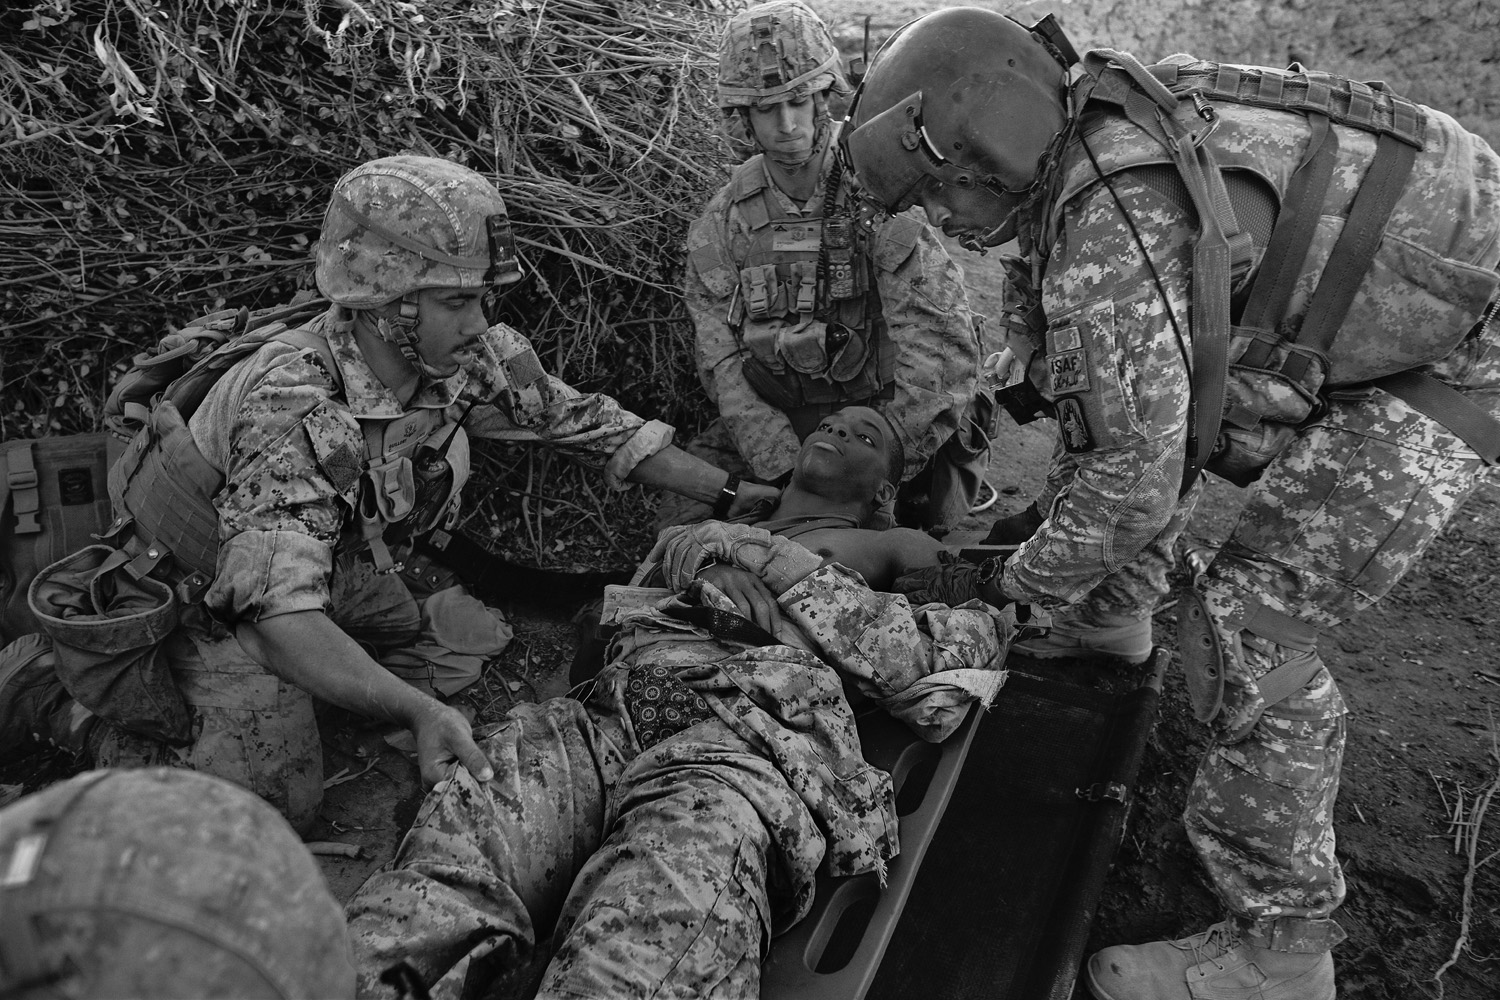 afghanistan-american-troop-war-papers-injury